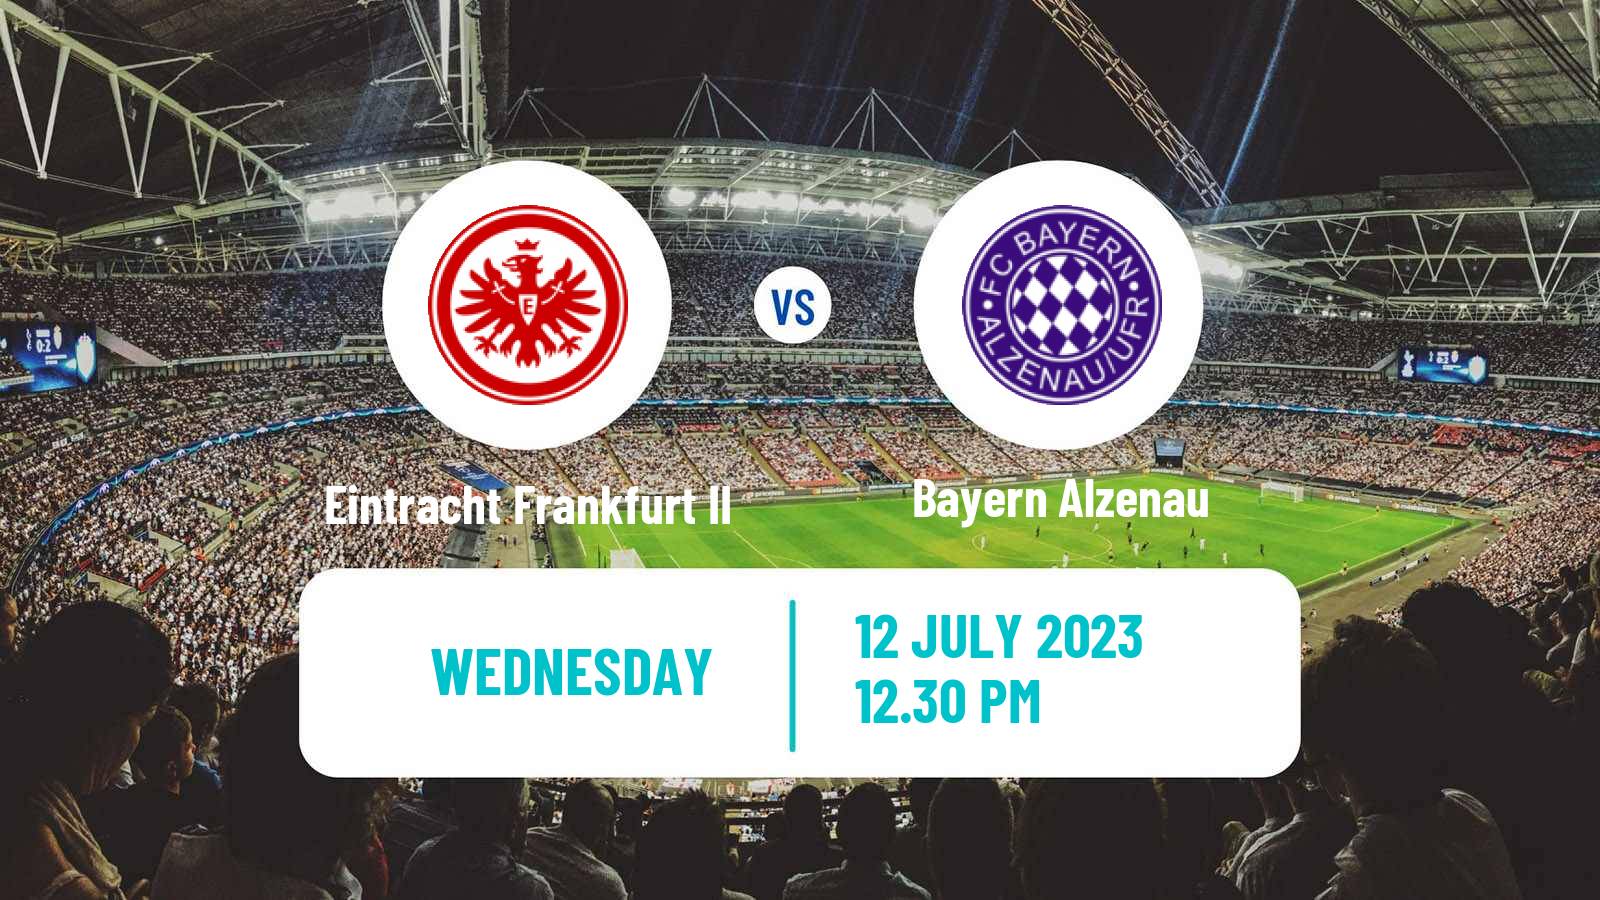 Soccer Club Friendly Eintracht Frankfurt II - Bayern Alzenau